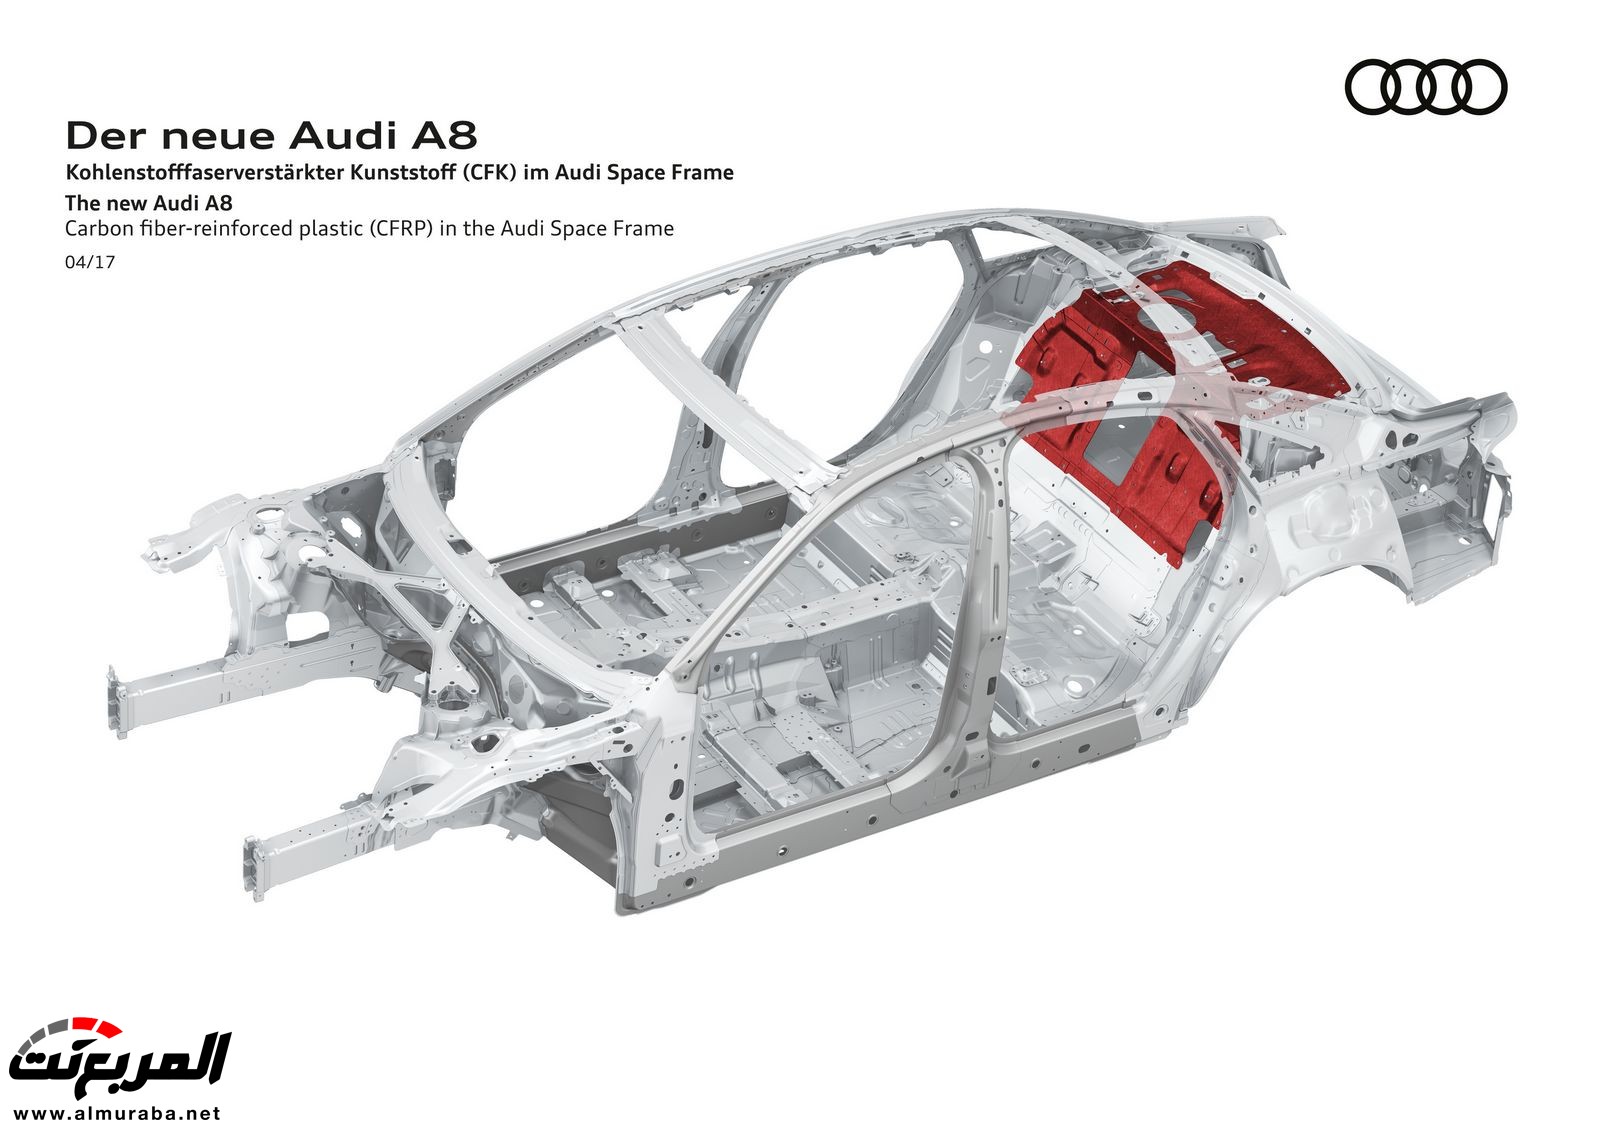 أودي A8 2018 الجديدة كلياً تكشف نفسها بتصميم وتقنيات متطورة "معلومات + 100 صورة" Audi A8 71